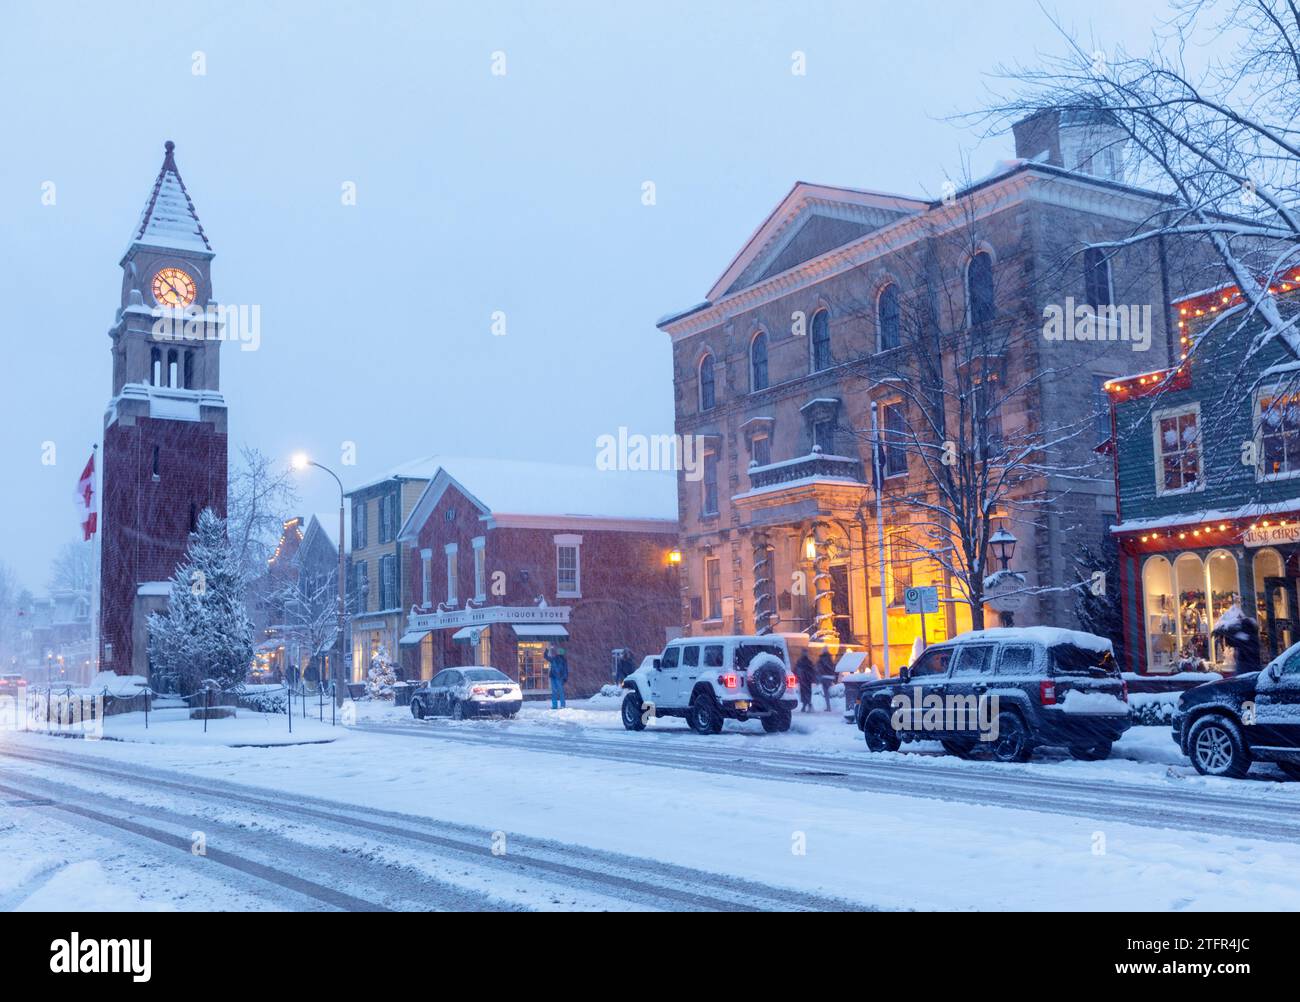 Canada, Ontario, Niagara sur le lac, une scène hivernale enneigée de la rue principale avec l'emblématique tour de l'horloge et le palais de justice au crépuscule Banque D'Images